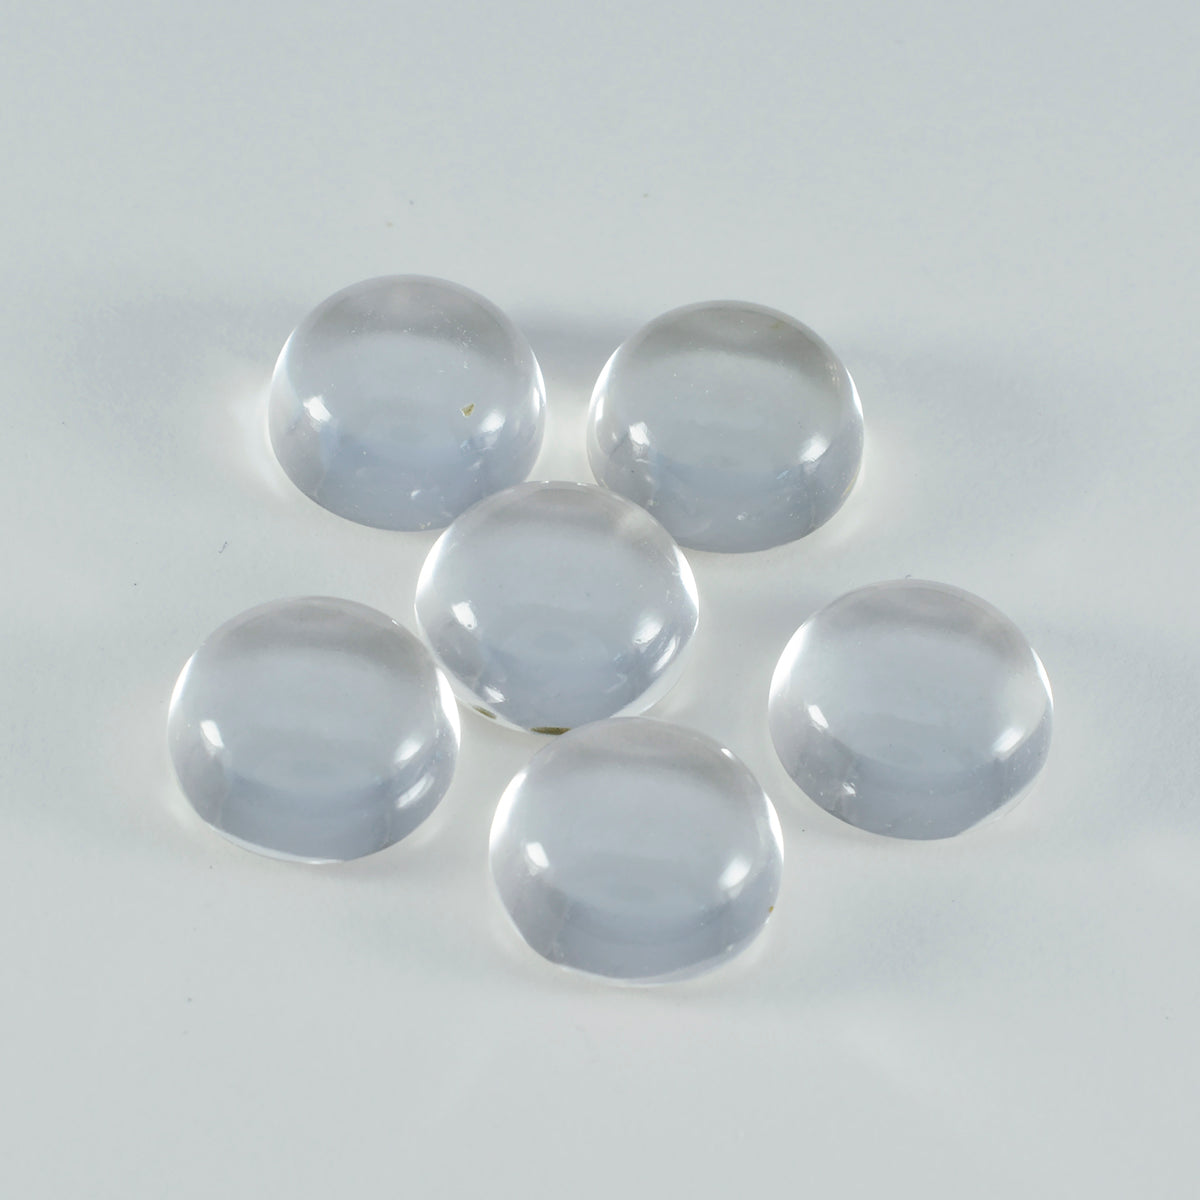 Riyogems 1PC witte kristalkwarts cabochon 10x10 mm ronde vorm mooie kwaliteit edelsteen